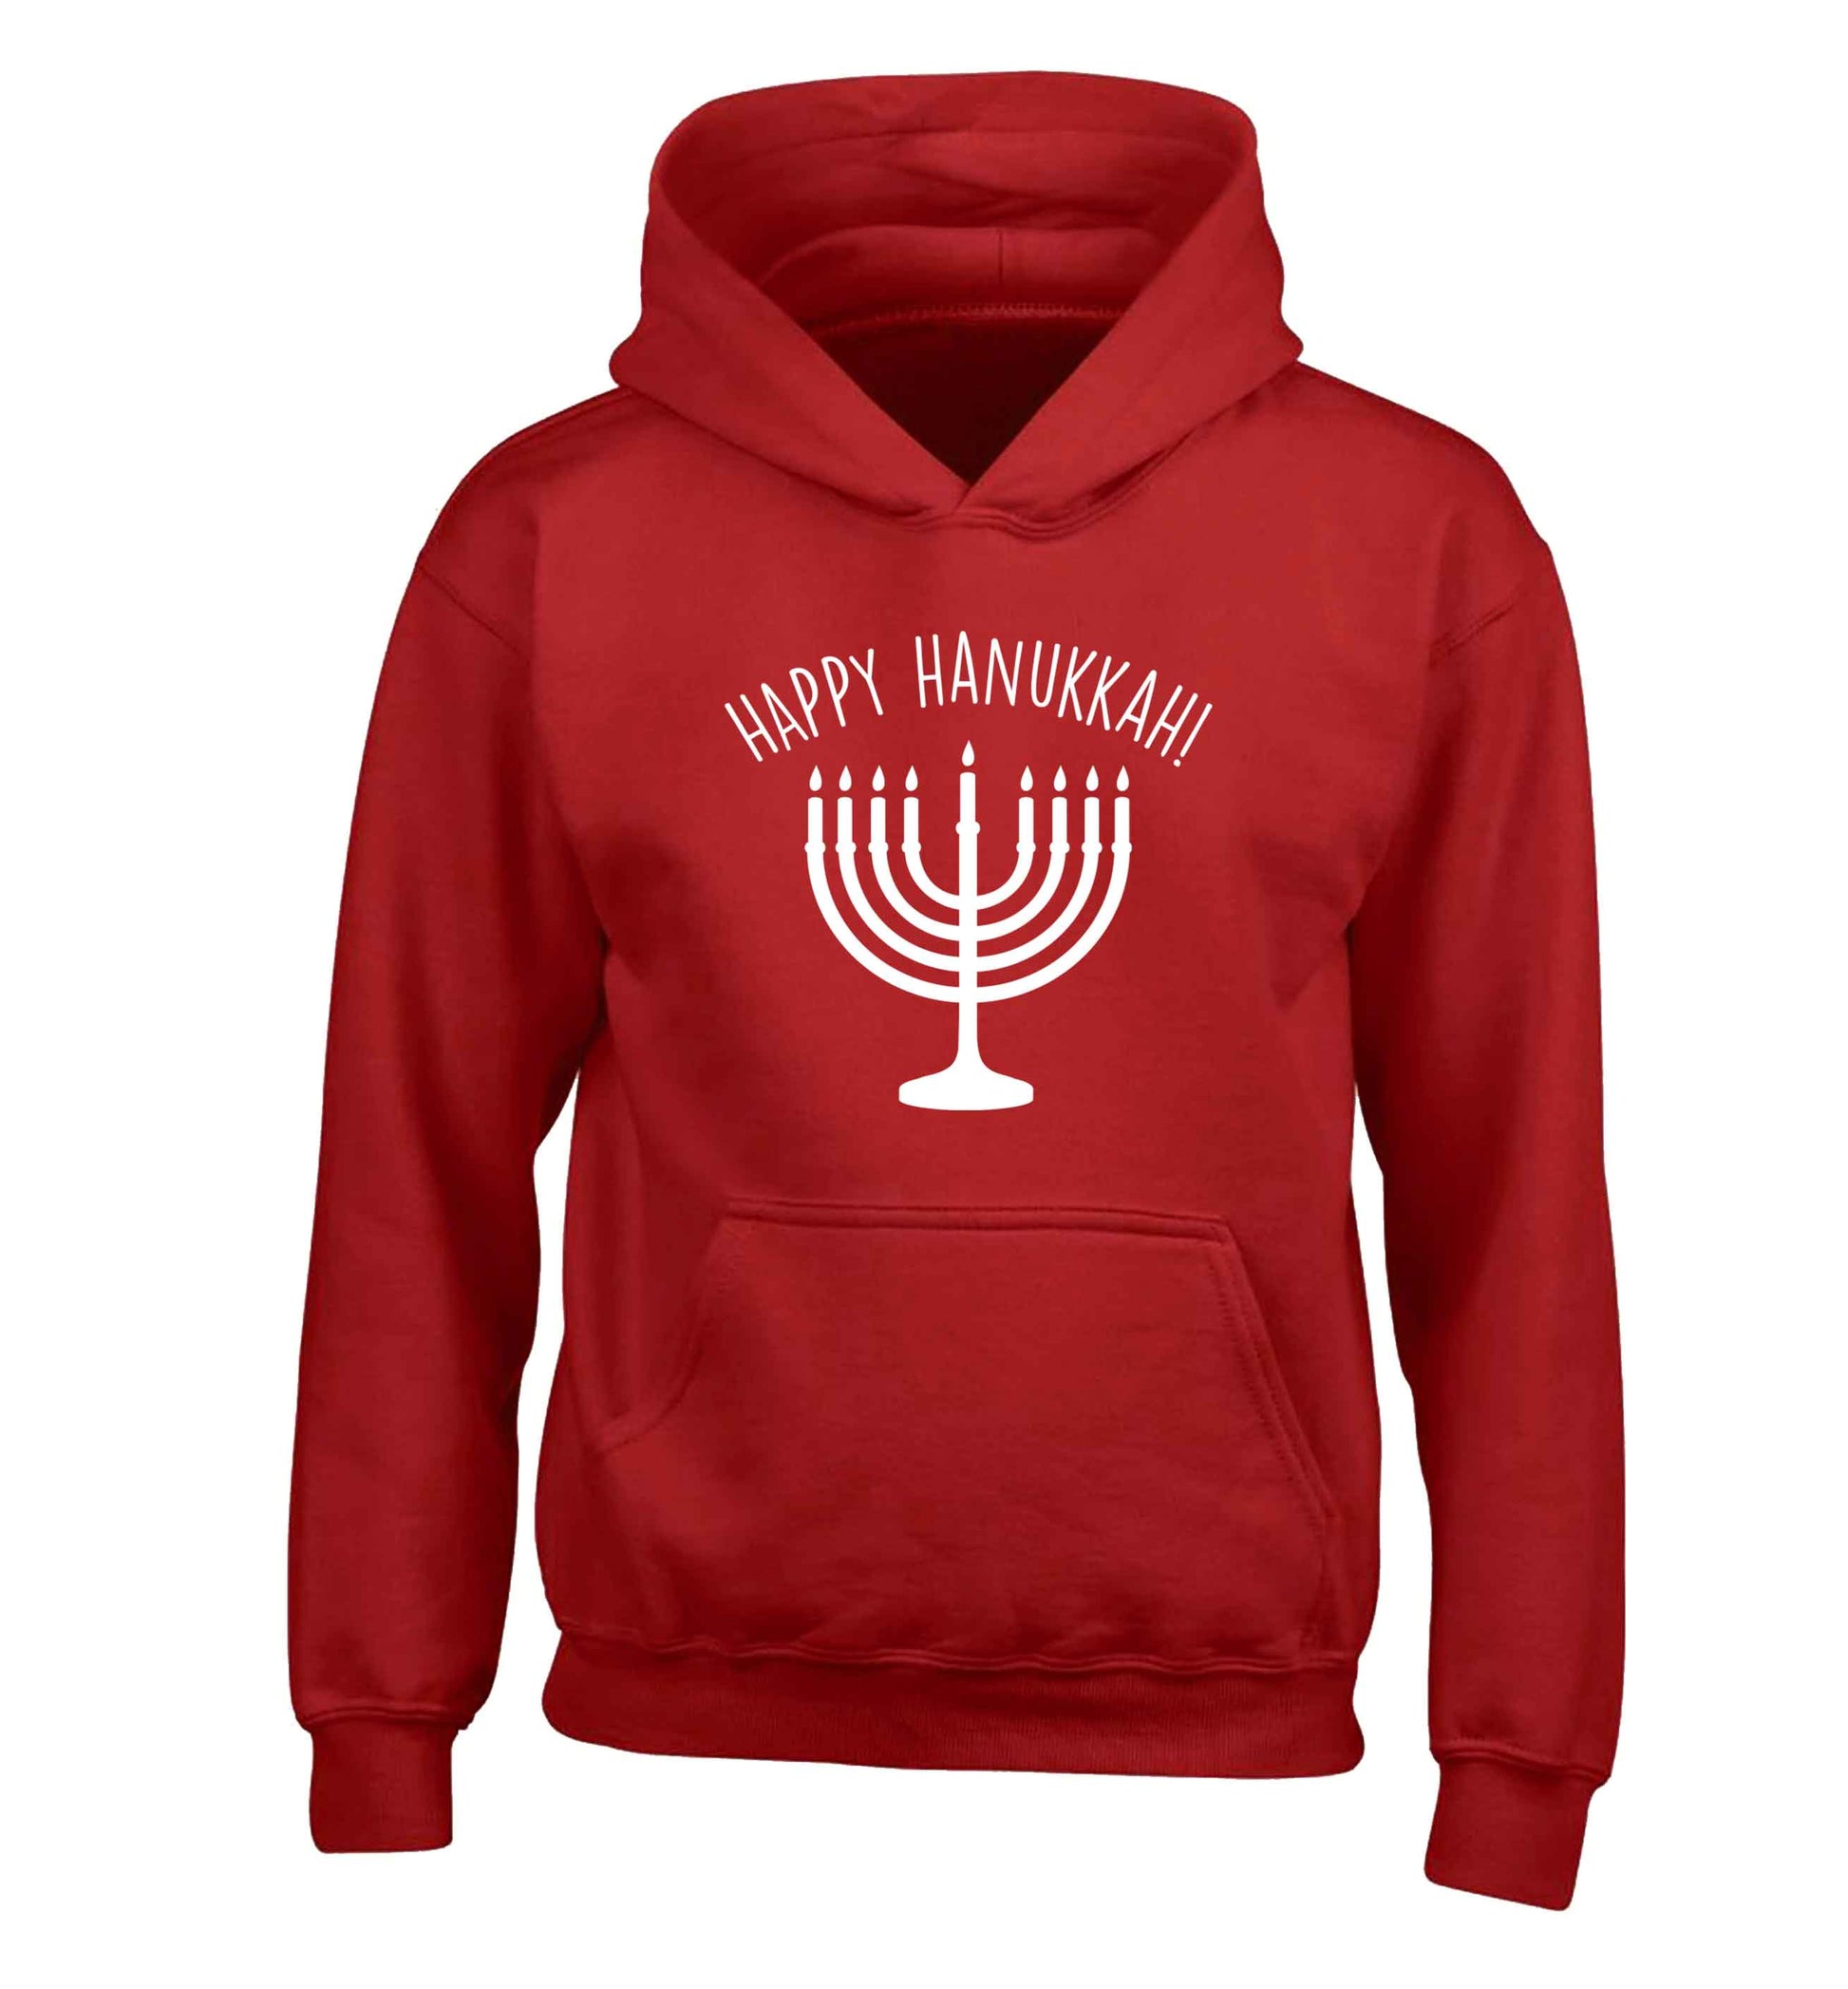 Happy hanukkah children's red hoodie 12-13 Years